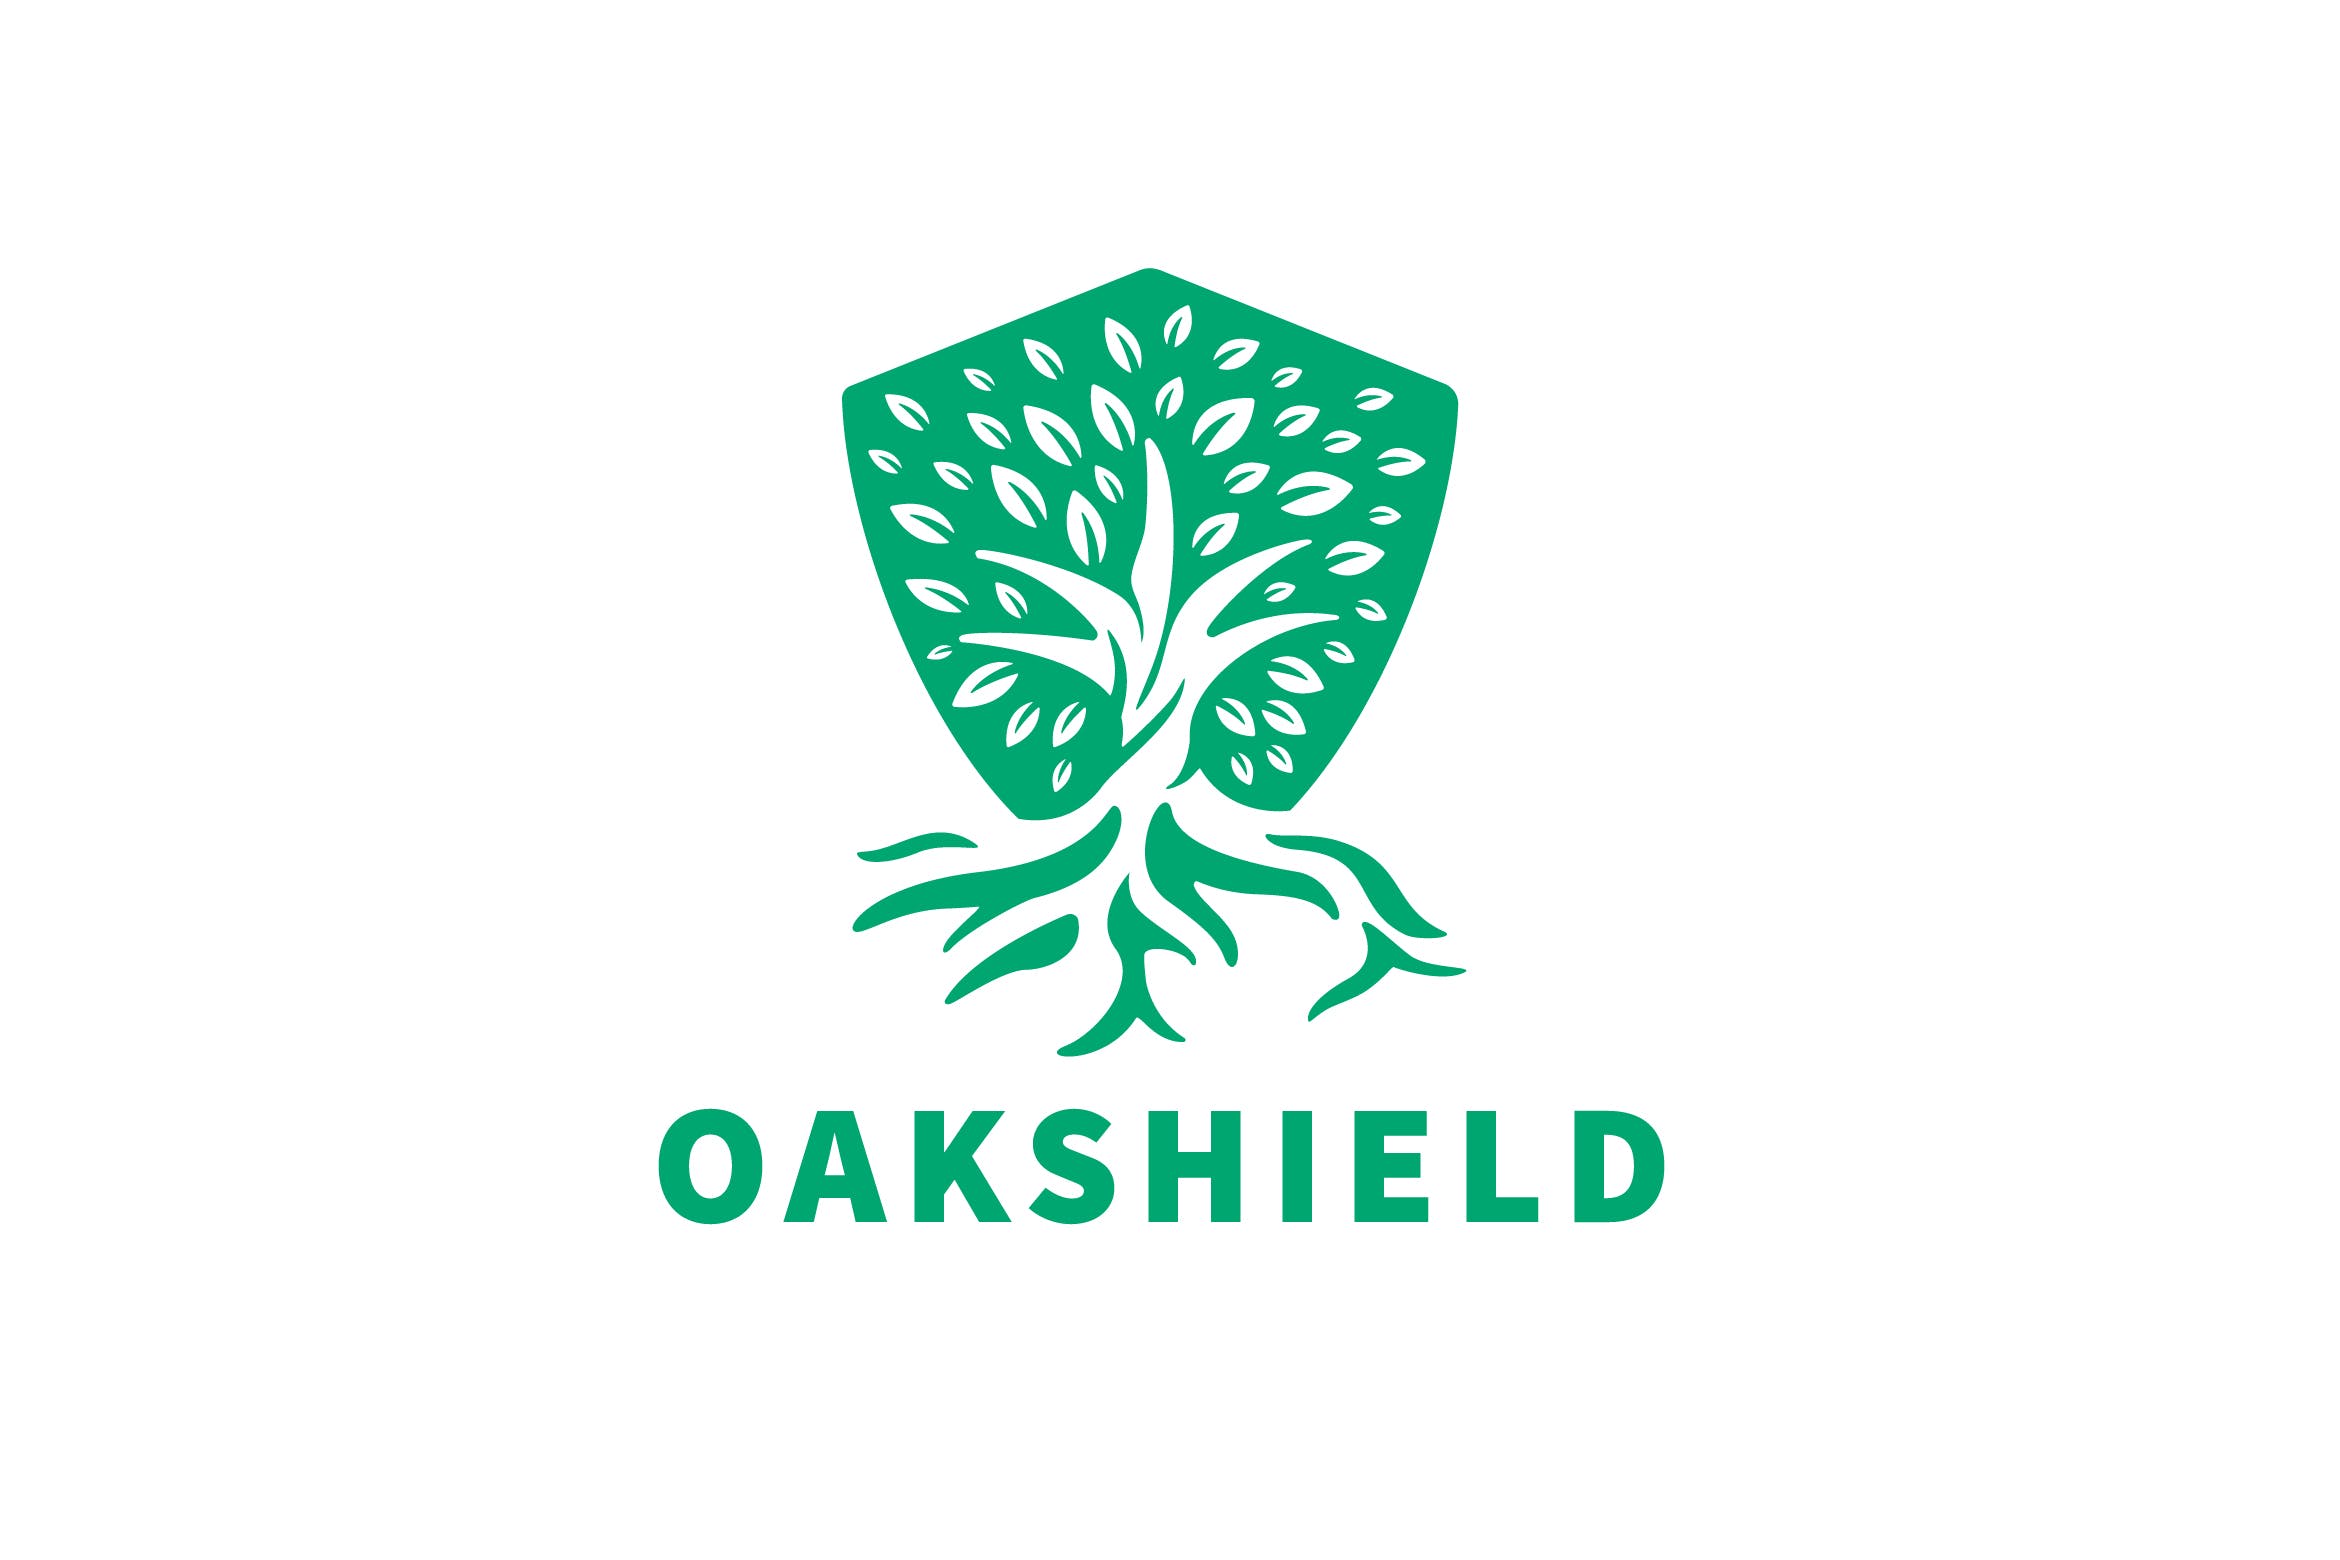 负空间设计风格橡木盾几何图形Logo设计16图库精选模板 Oak Shield Negative Space Logo插图